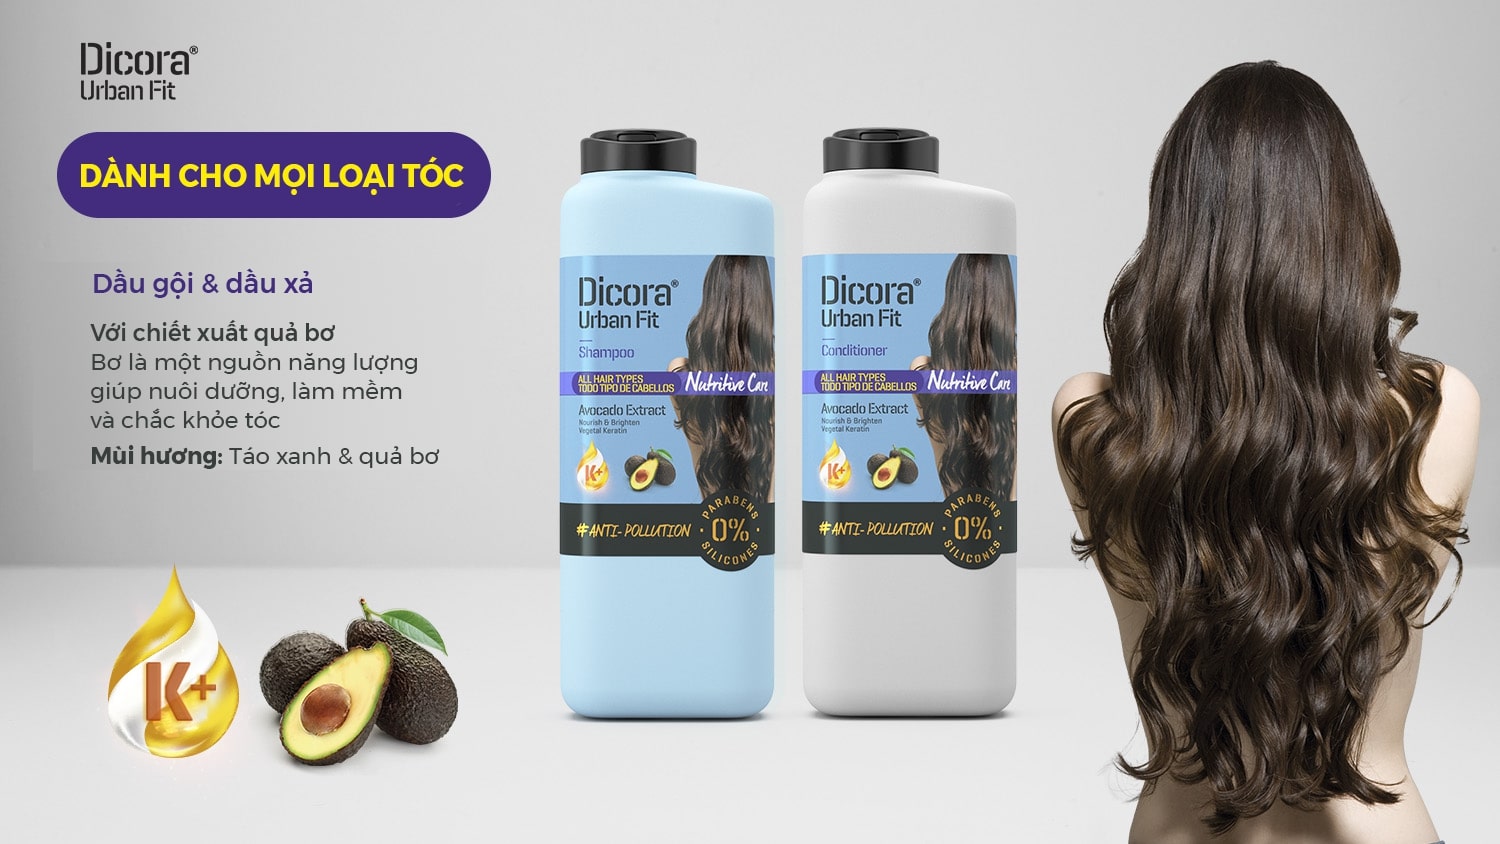 Dầu gội Dicora Urban Fit dành cho mọi loại tóc chiết xuất trái bơ làm sạch da đầu, giúp t.óc chắc khỏe 400ml